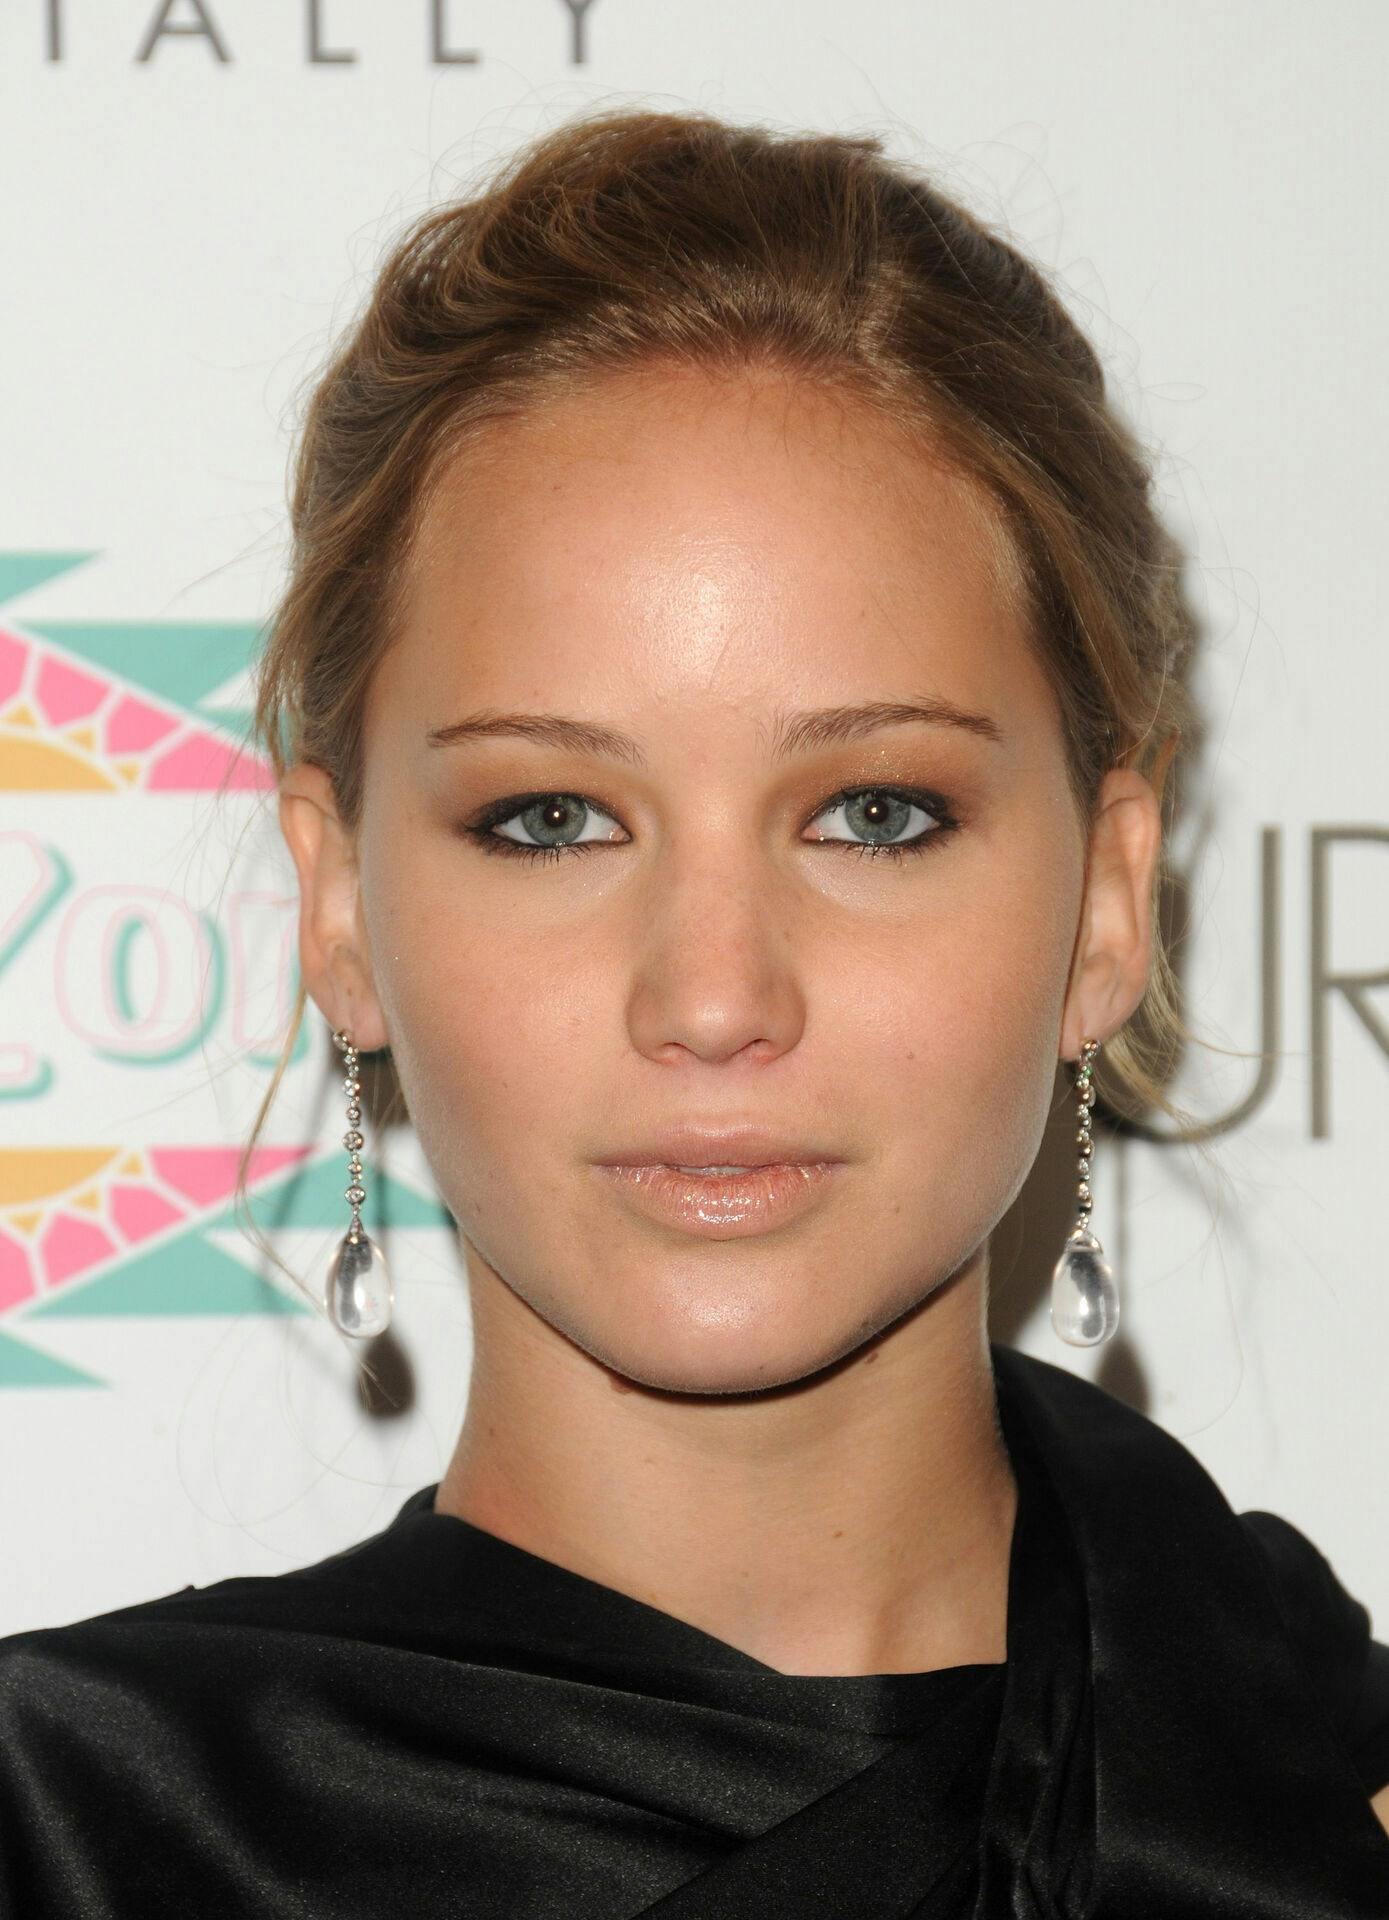 Der har ikke været en plastikkirurg inde over, siger Jennifer Lawrence. Hun er bare blevet ældre.